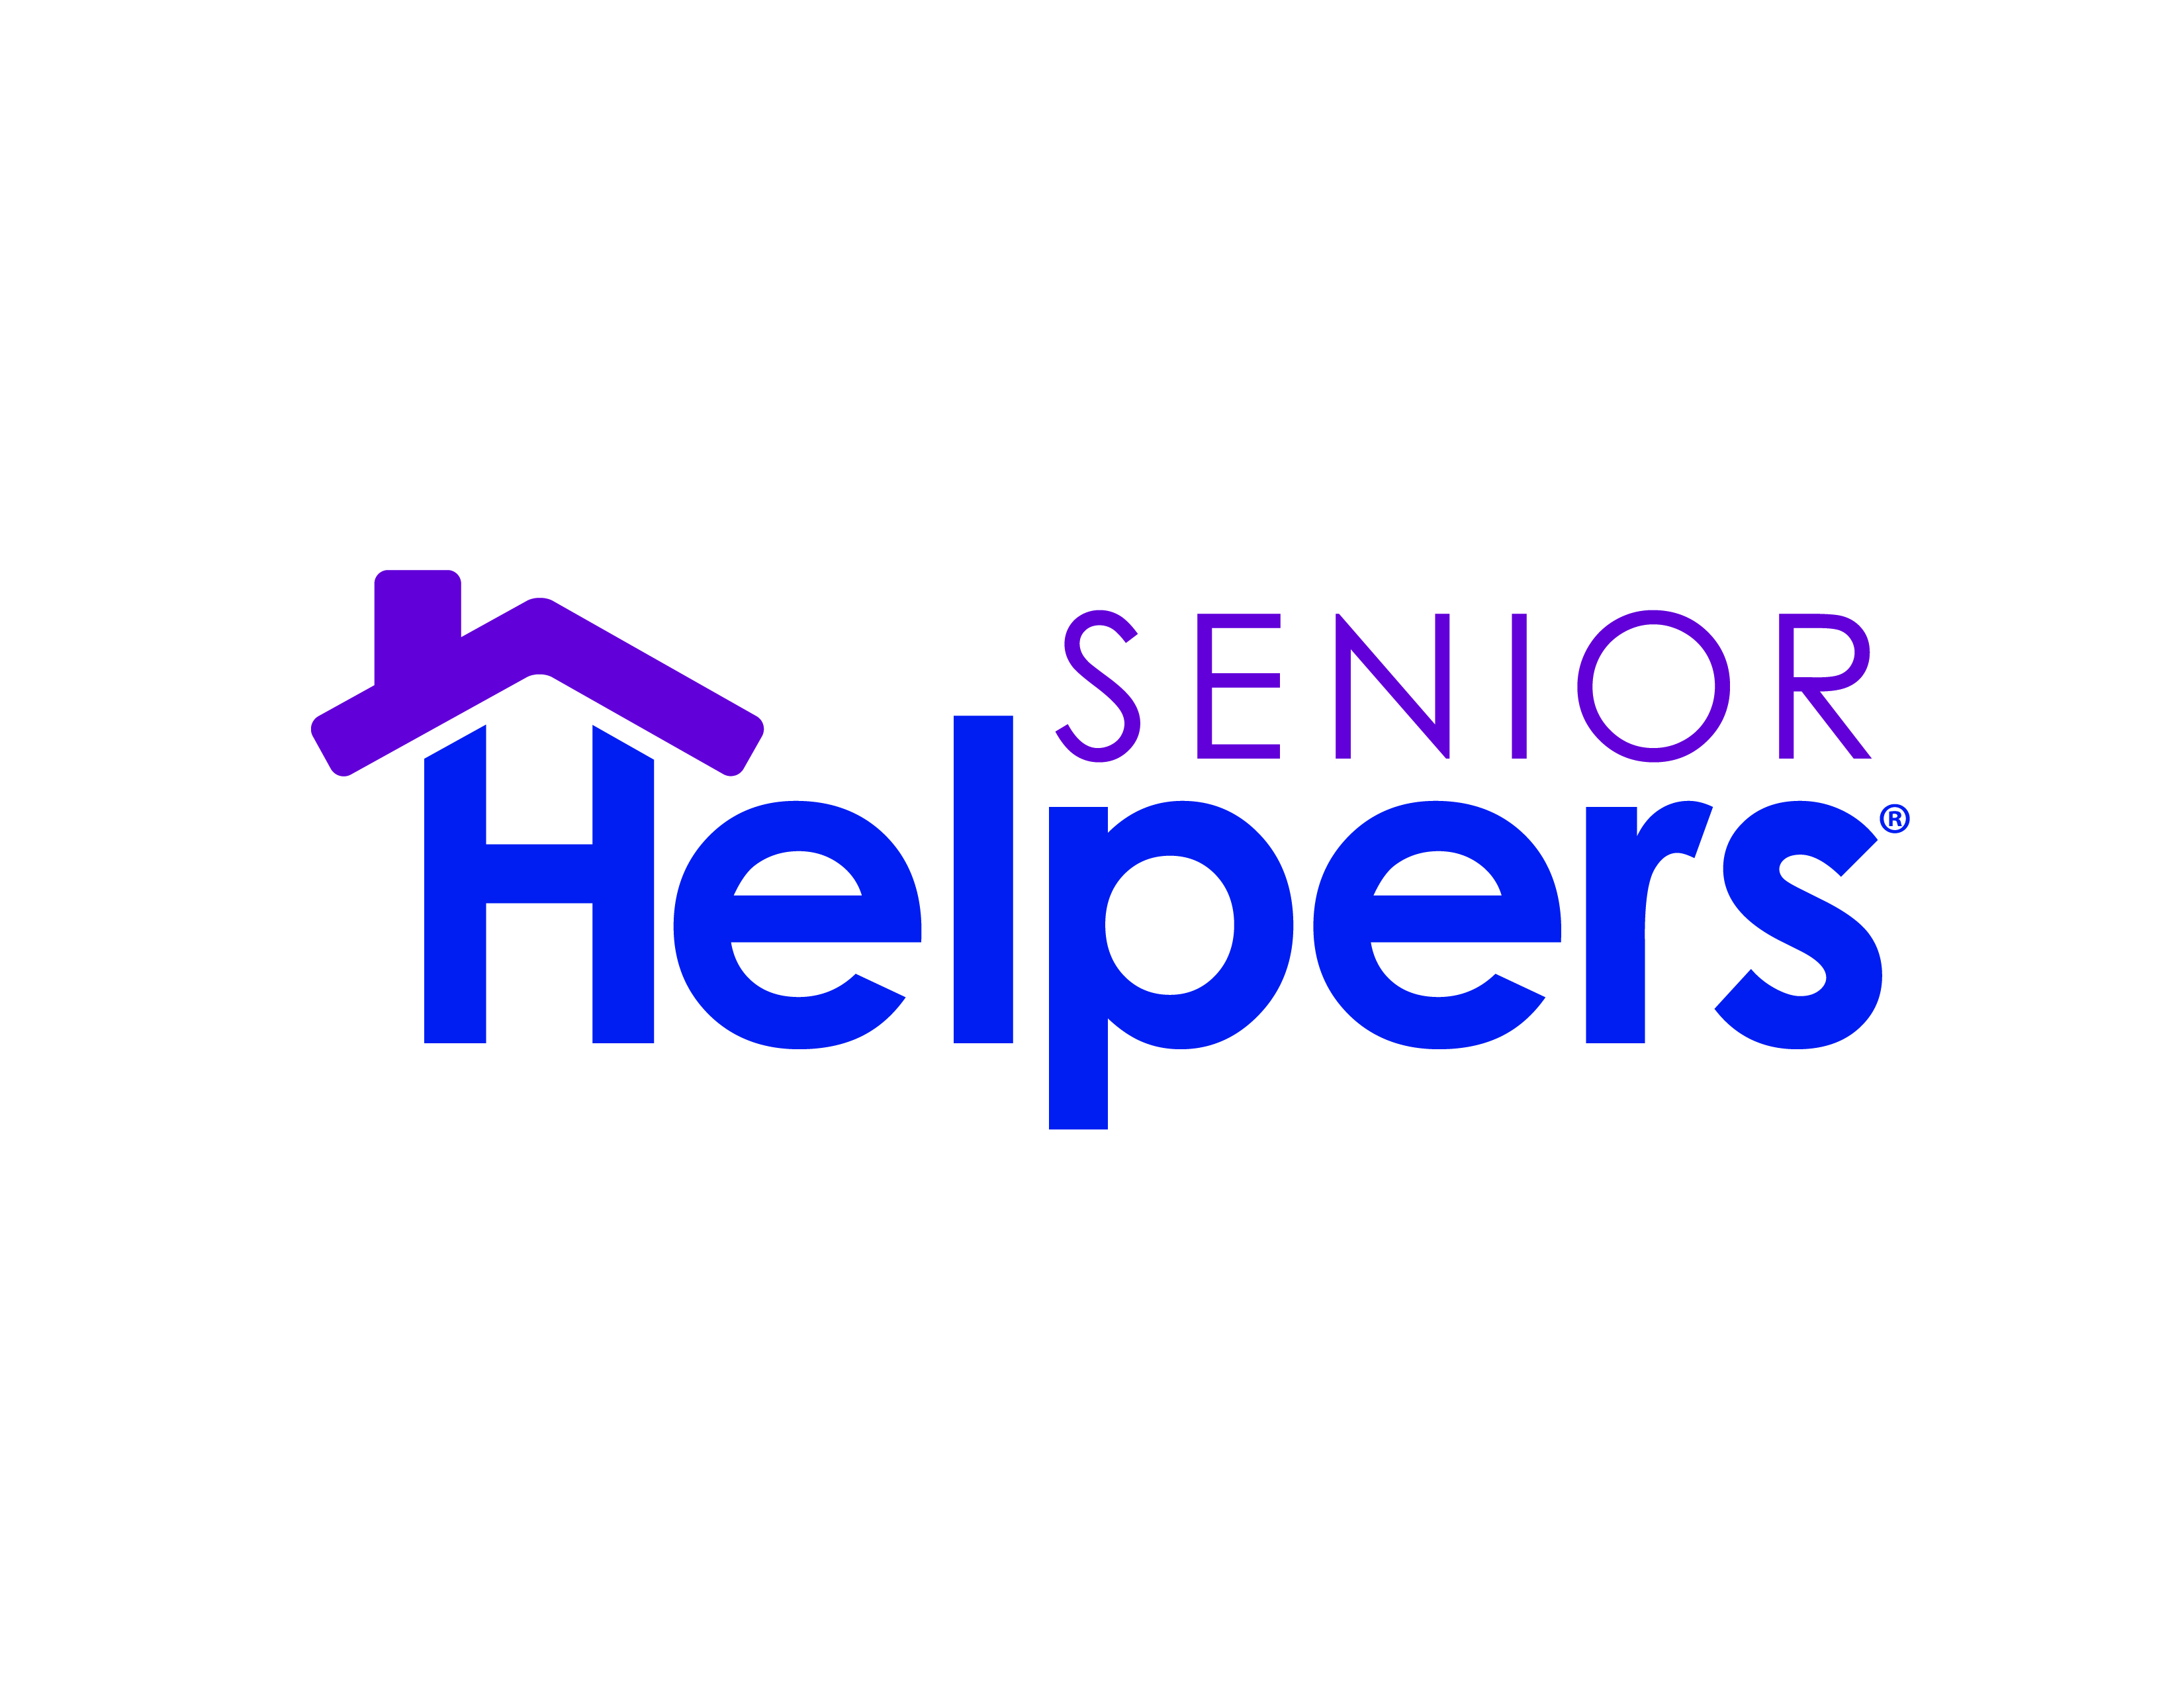 3. Senior Helpers (Purple)